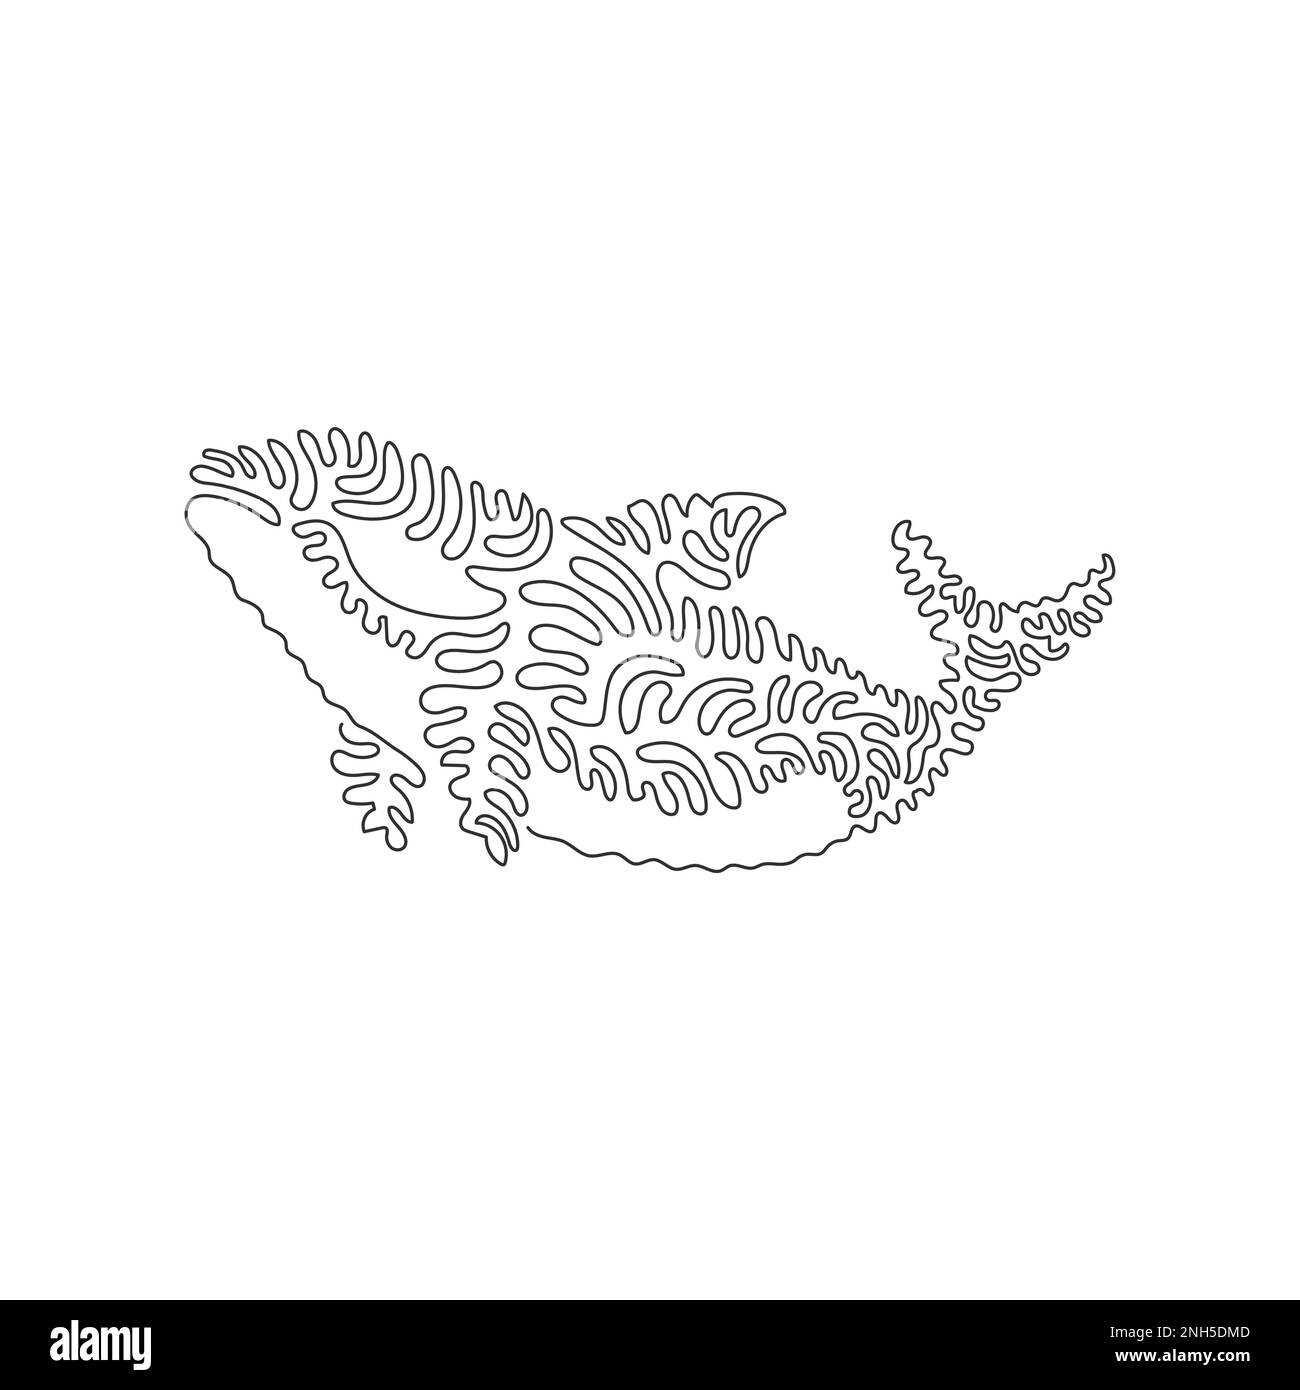 Un seul dessin d'une ligne de l'orque comme le plus puissant dans l'océan art abstrait Dessin de ligne continue dessin graphique illustration vectorielle de la sauvegarde d'orque Illustration de Vecteur